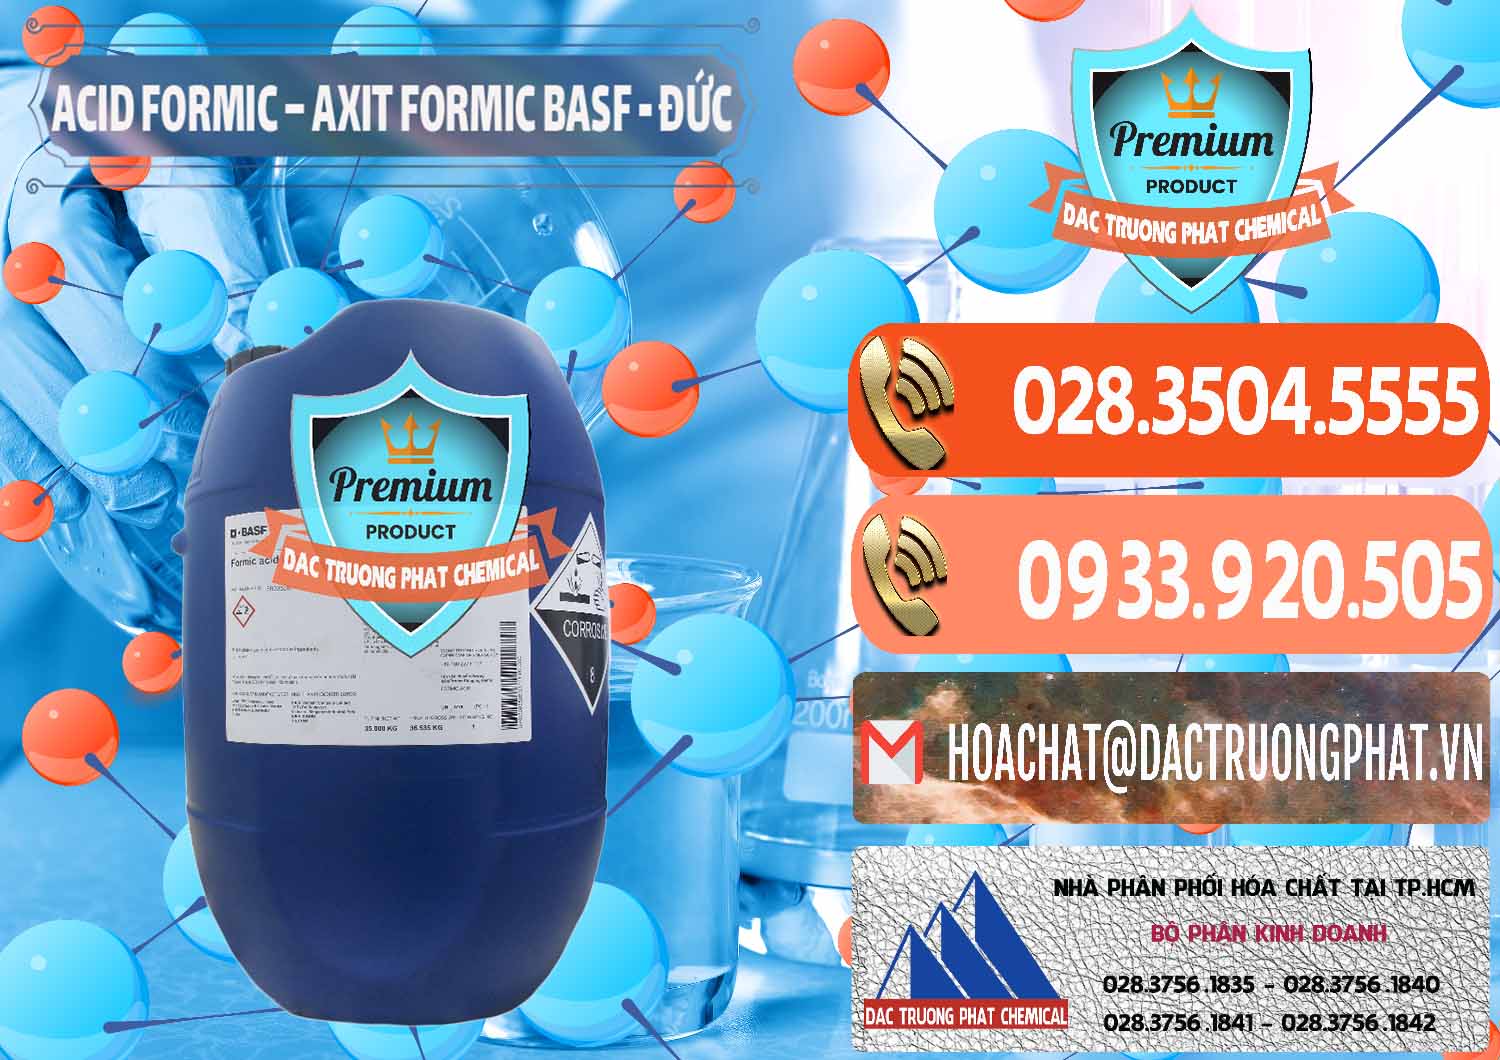 Nơi bán & phân phối Acid Formic - Axit Formic BASF Đức Germany - 0028 - Công ty cung cấp & bán hóa chất tại TP.HCM - hoachatmientay.com